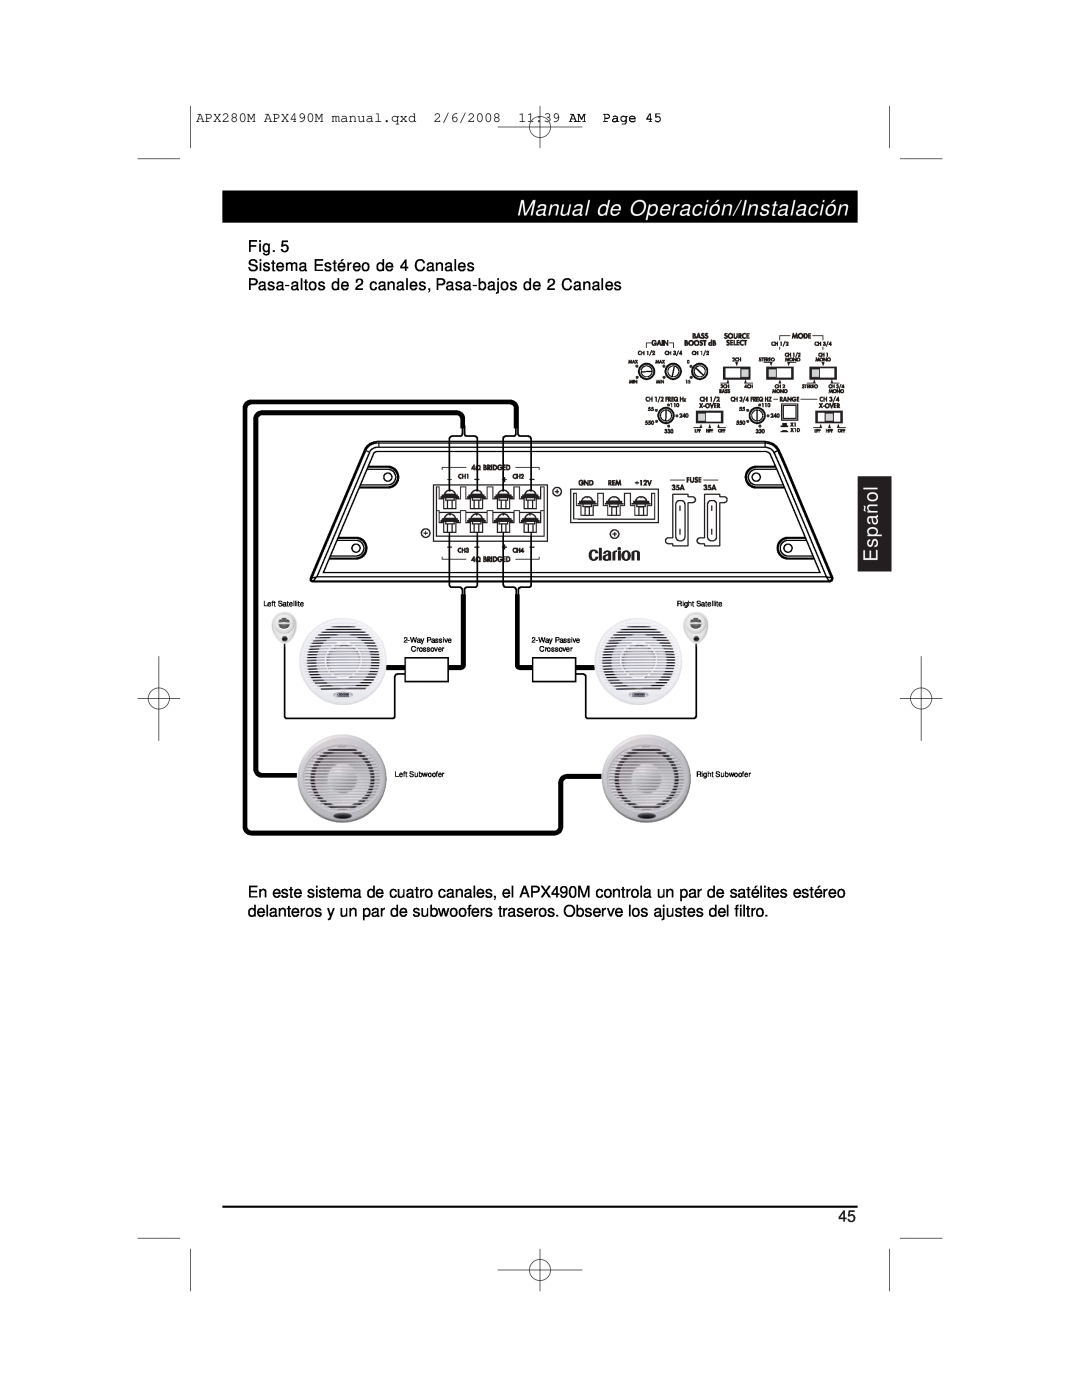 Clarion APX290M installation manual Manual de Operación/Instalación, Español, Fig. Sistema Estéreo de 4 Canales 